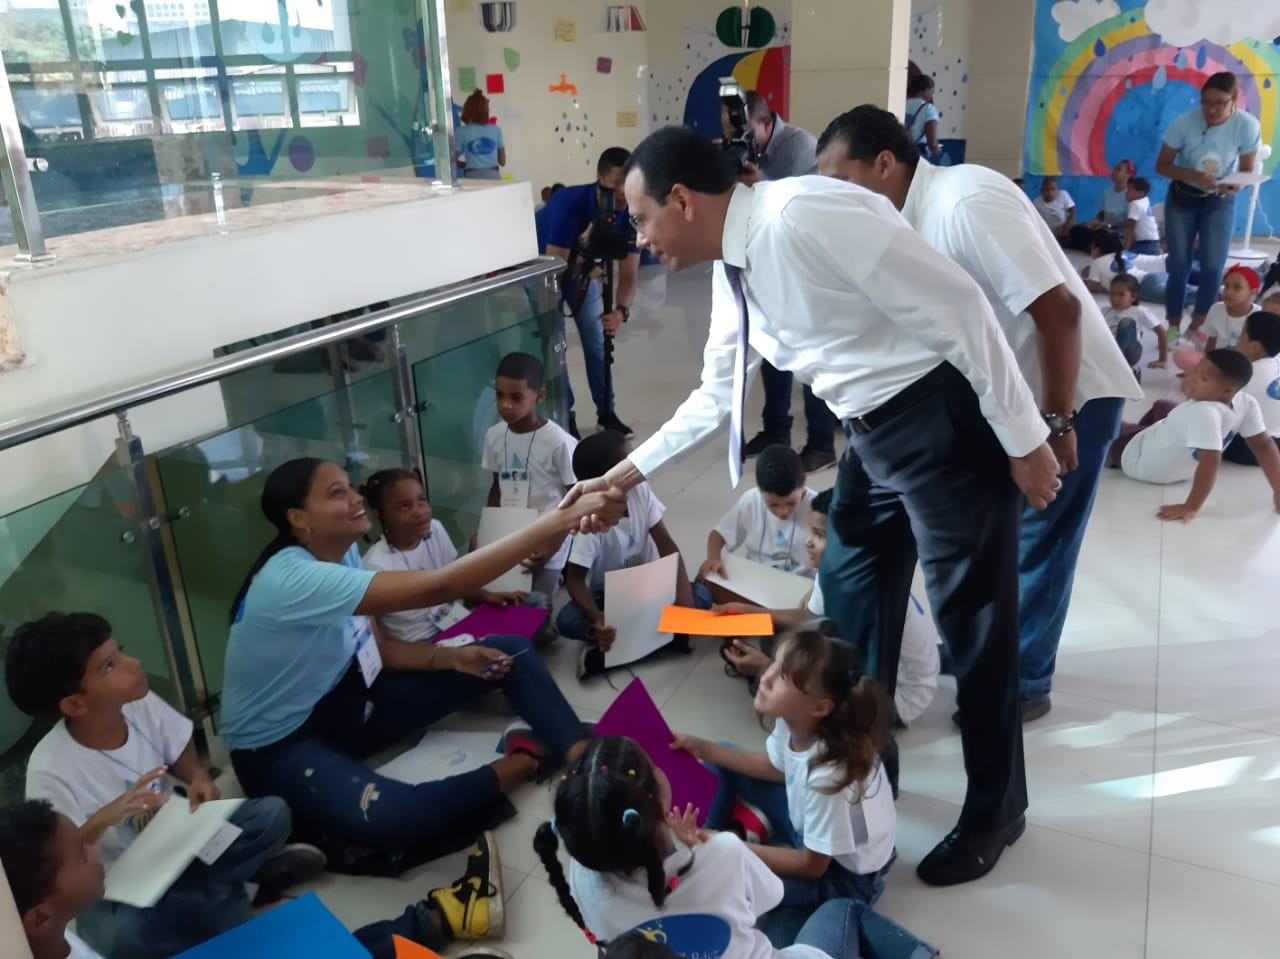  imagen Ministro de Educación saluda a facilitadora sentada en el piso junto a grupo de niños. 